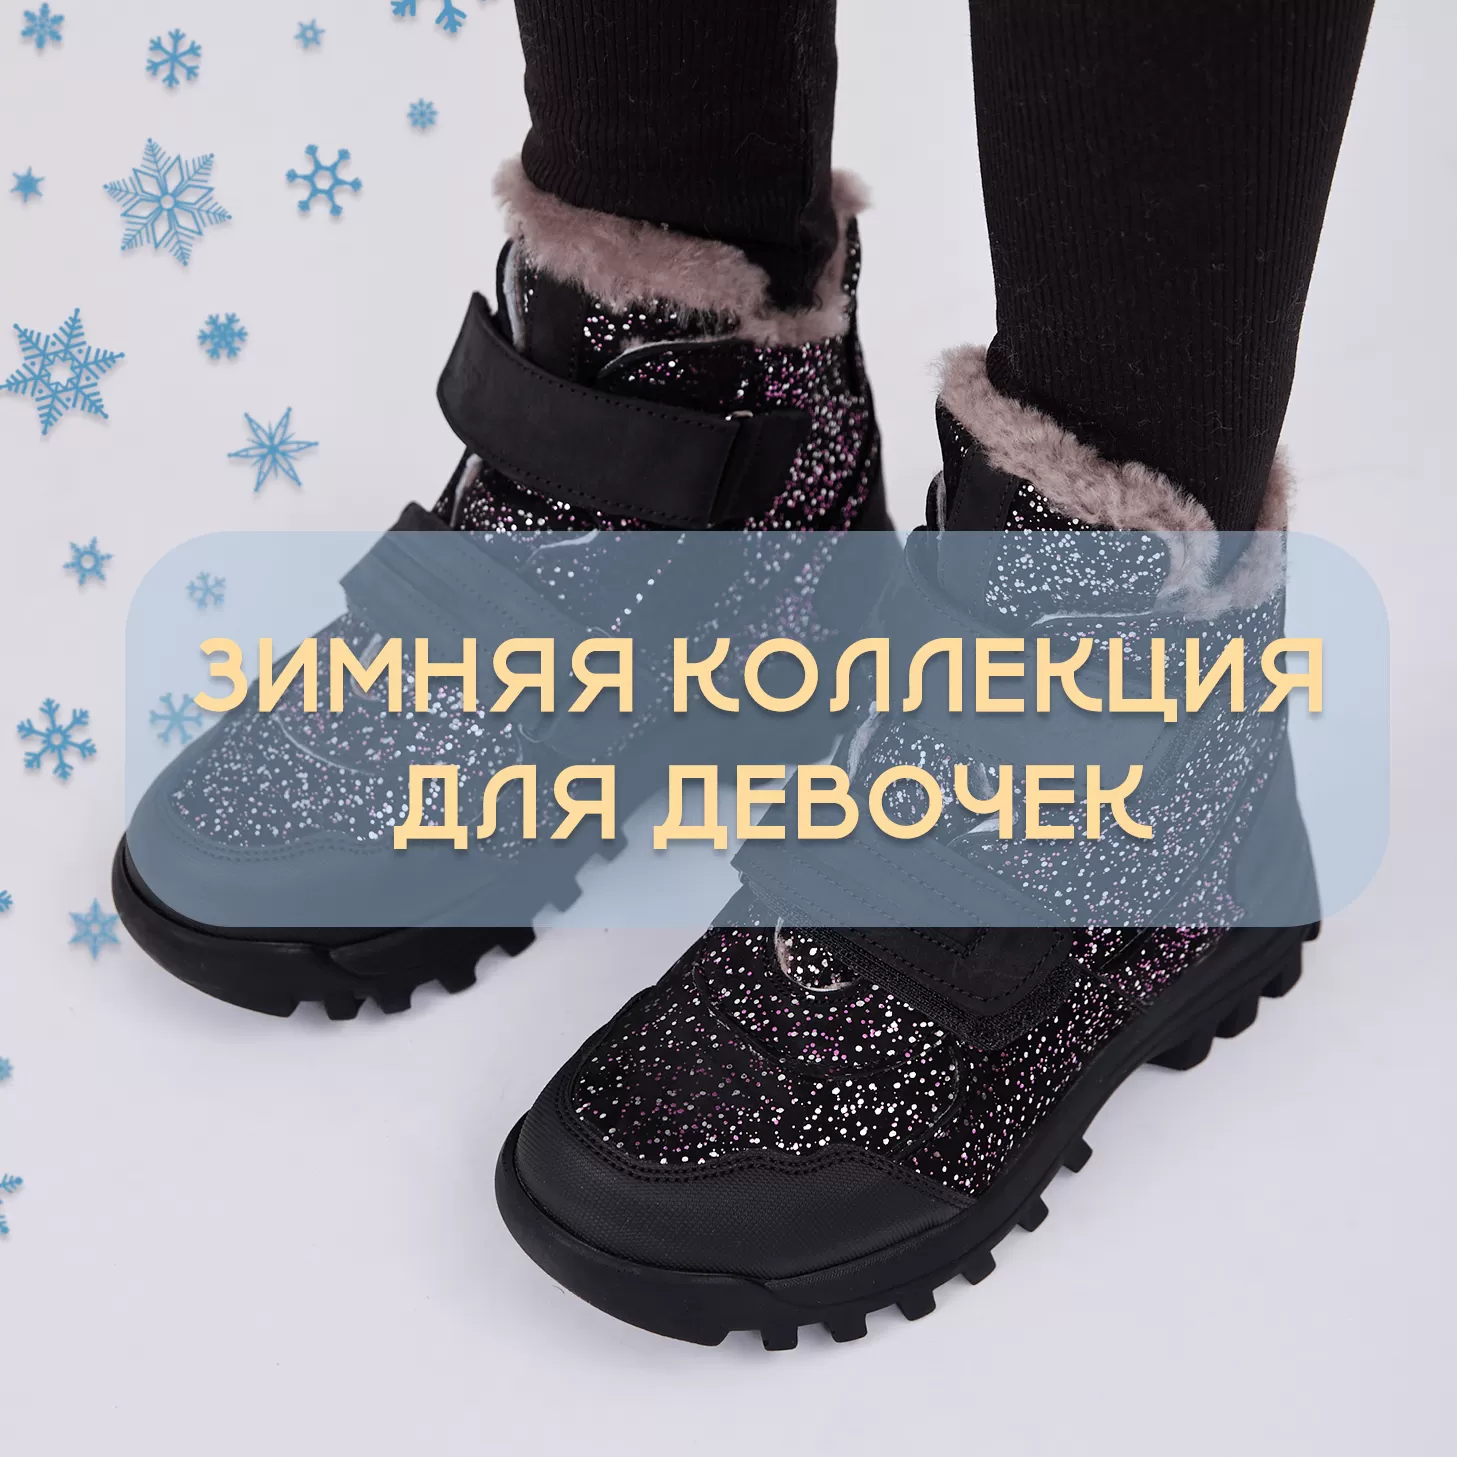 Выбираем качественную детскую обувь в Киеве